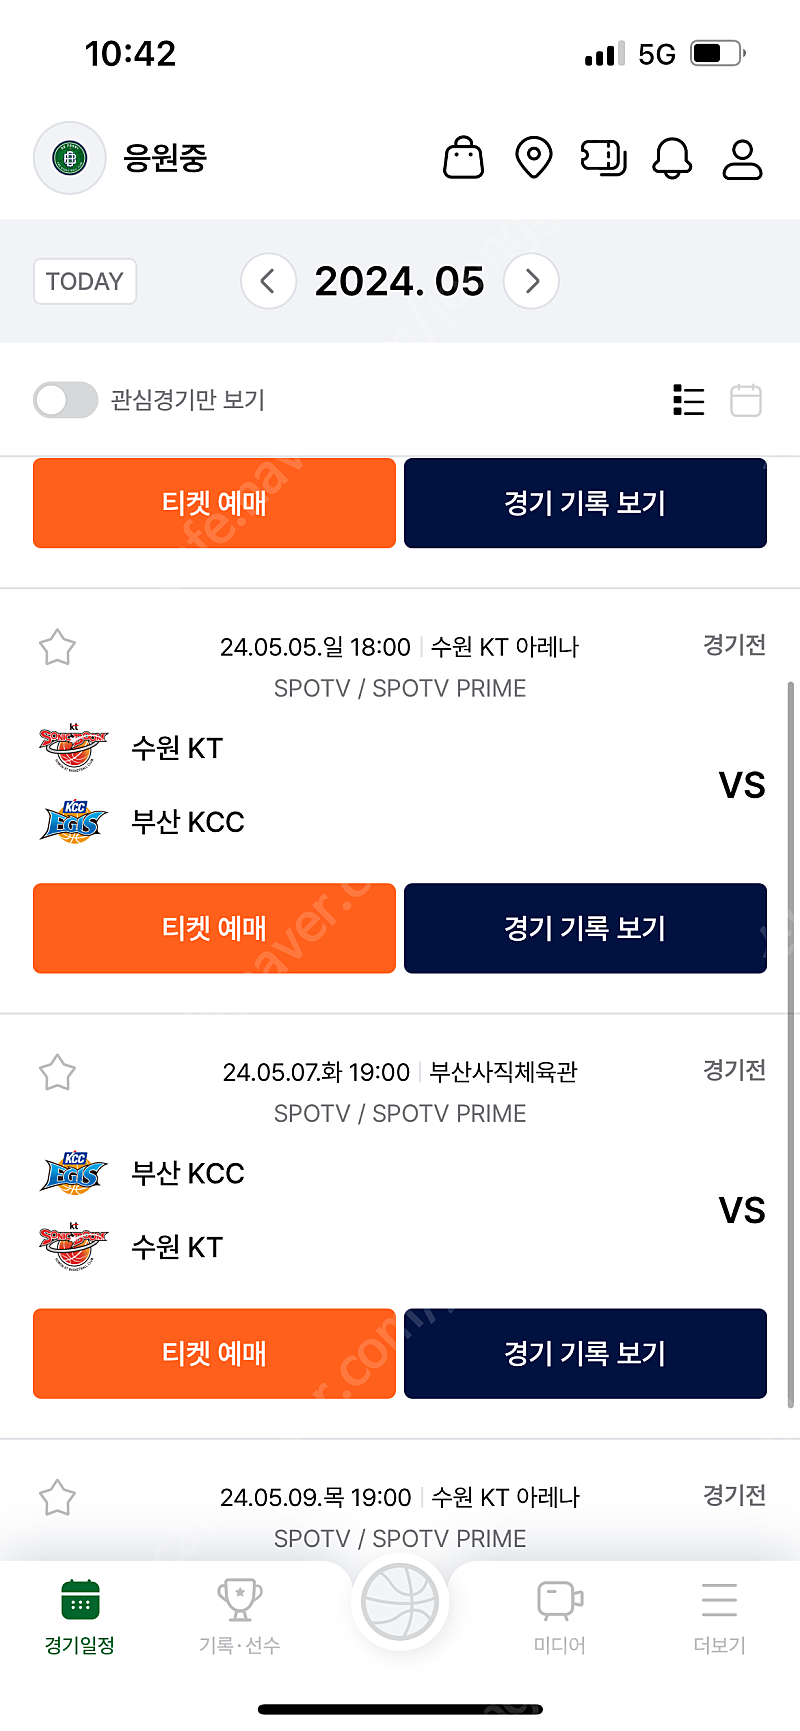 5월 5월 프로농구 KT vs KCC 5차전 2연석 티켓구매원합니다!!